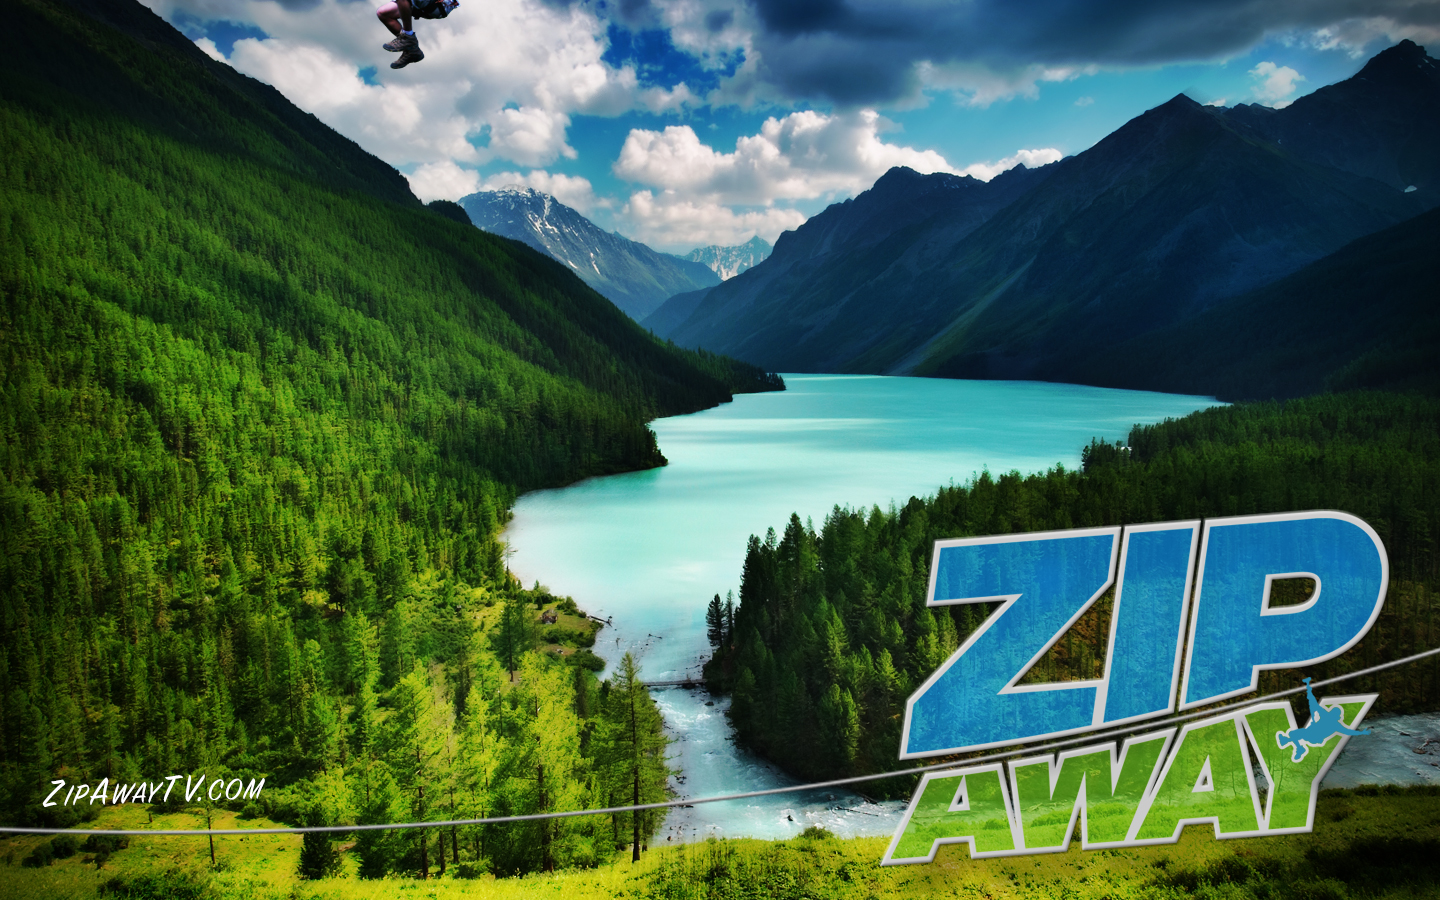 Zip Away With The Zip Line Guy! Zip Away TV™